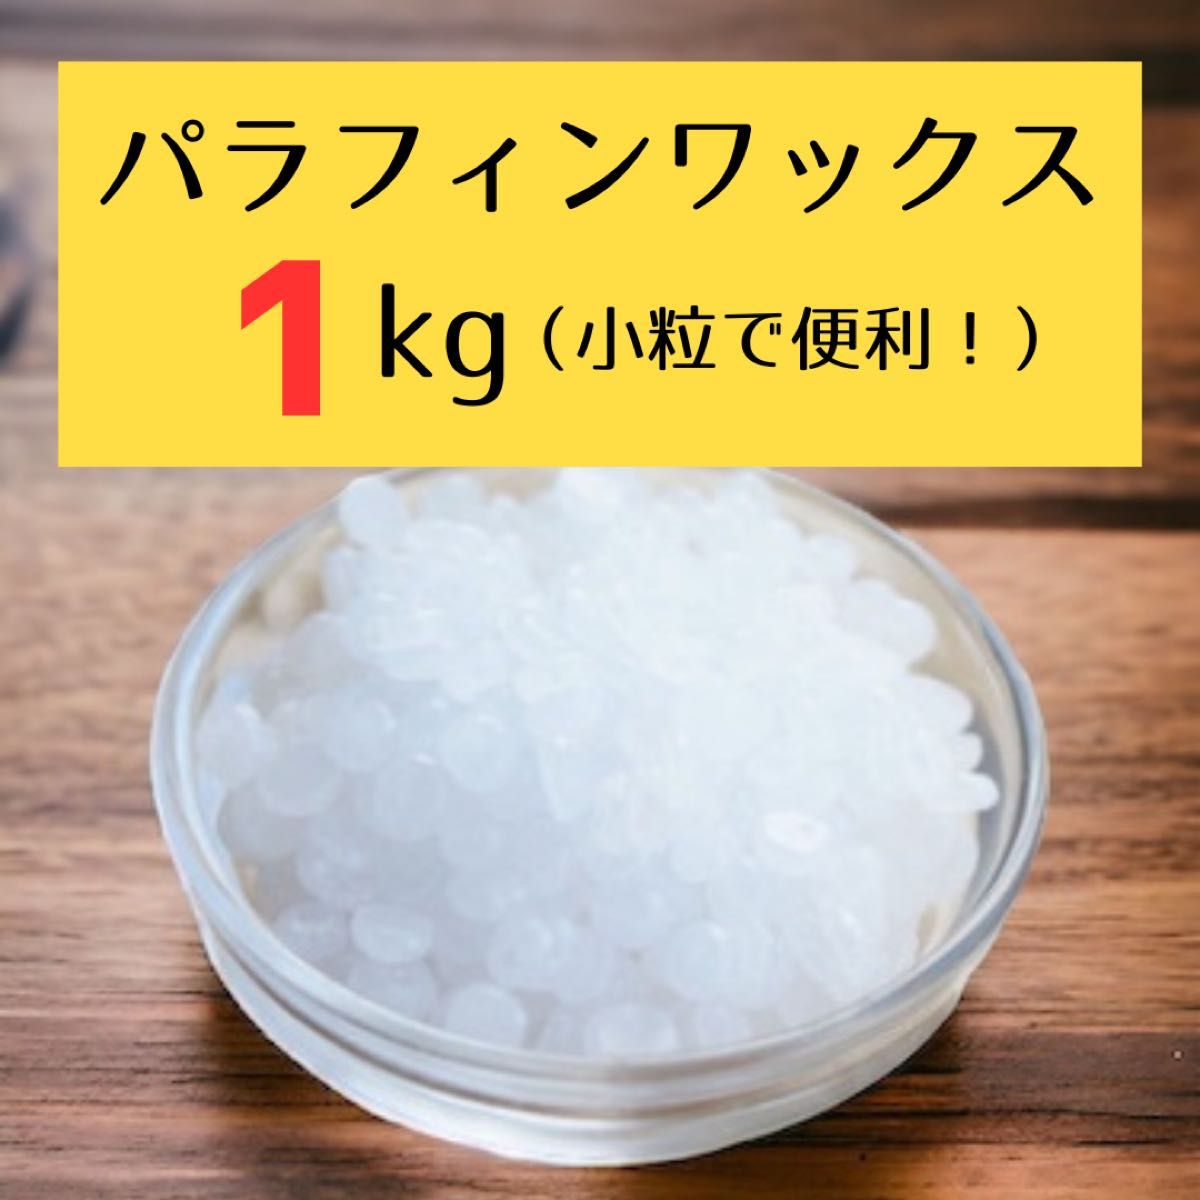 【日本製】パラフィンワックス 1kg (小粒ペレット状)キャンドル用 